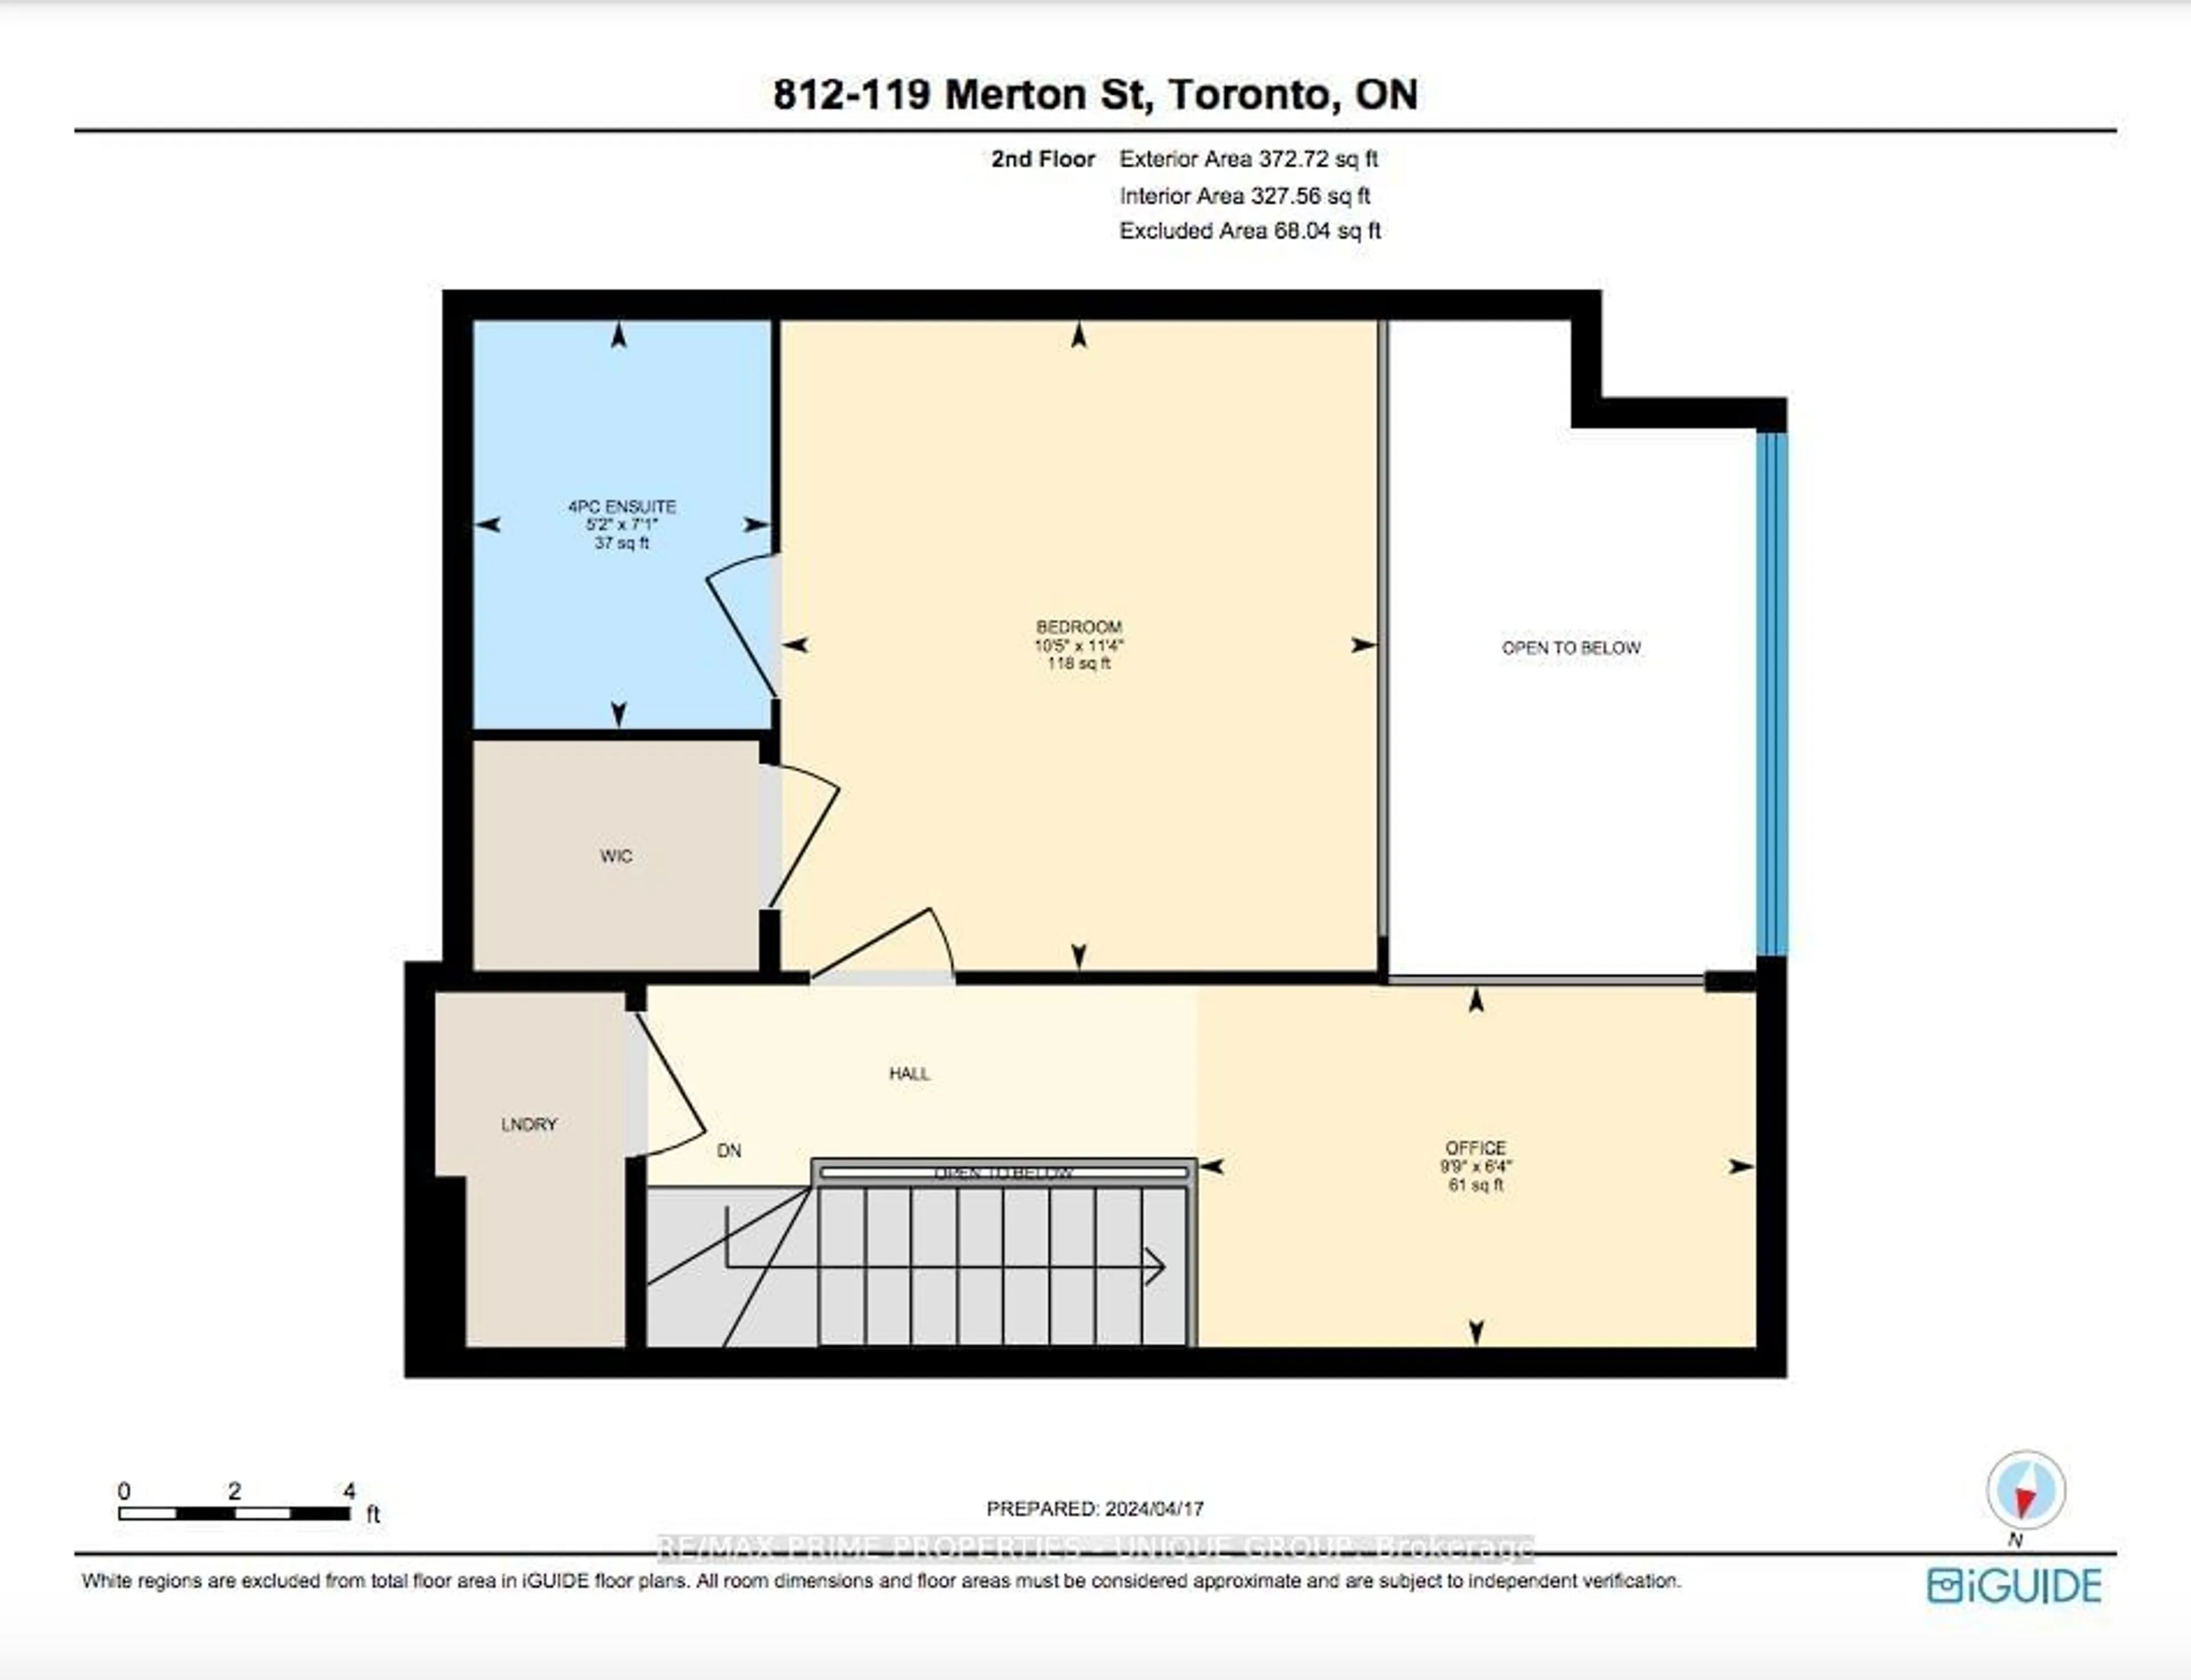 Floor plan for 119 Merton St #812, Toronto Ontario M4S 3G5